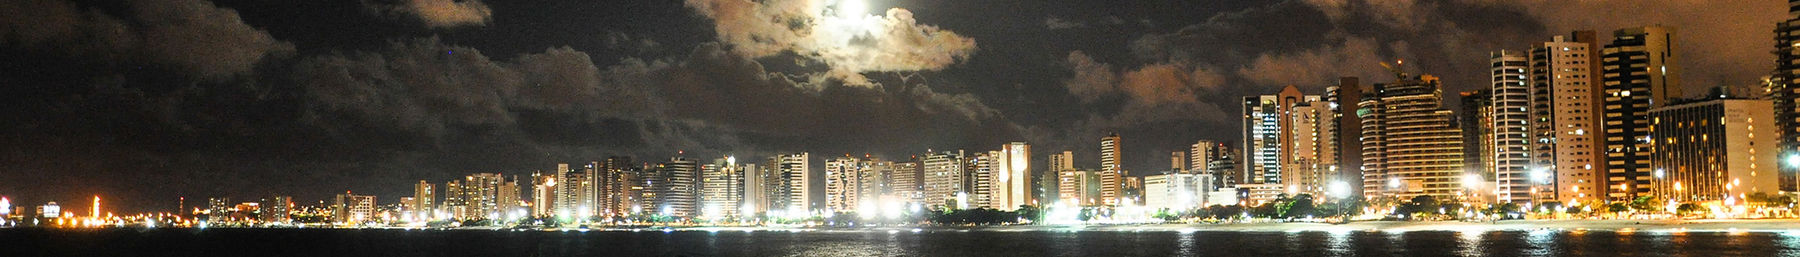 Fortaleza banner Beira Mar.jpg